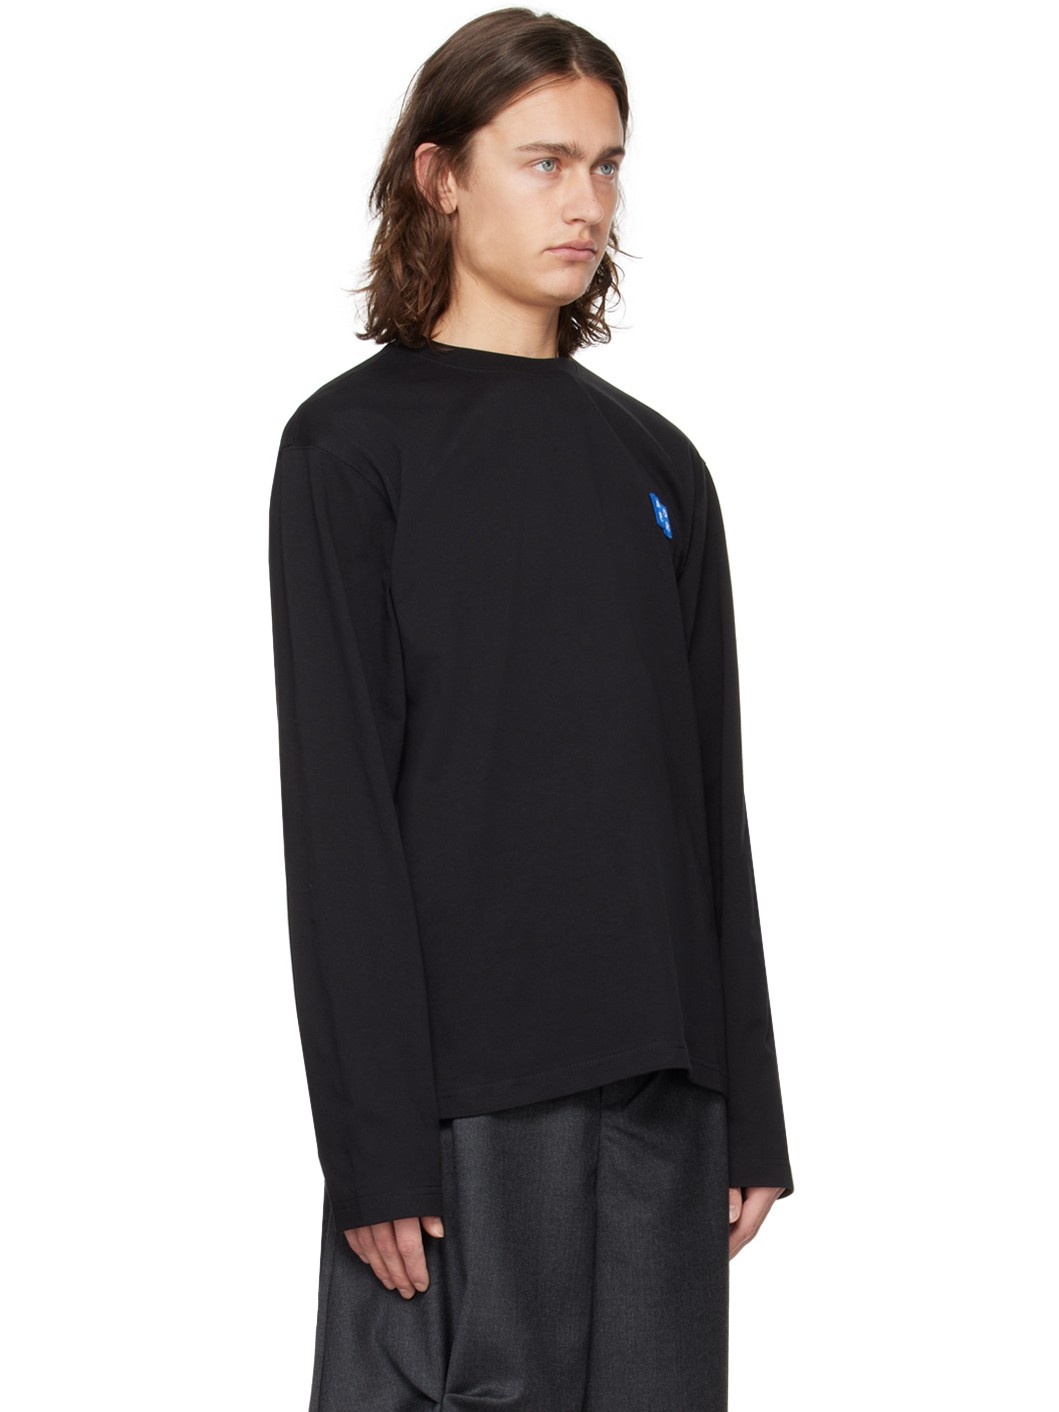 Black Patch Long Sleeve T-Shirt - 2